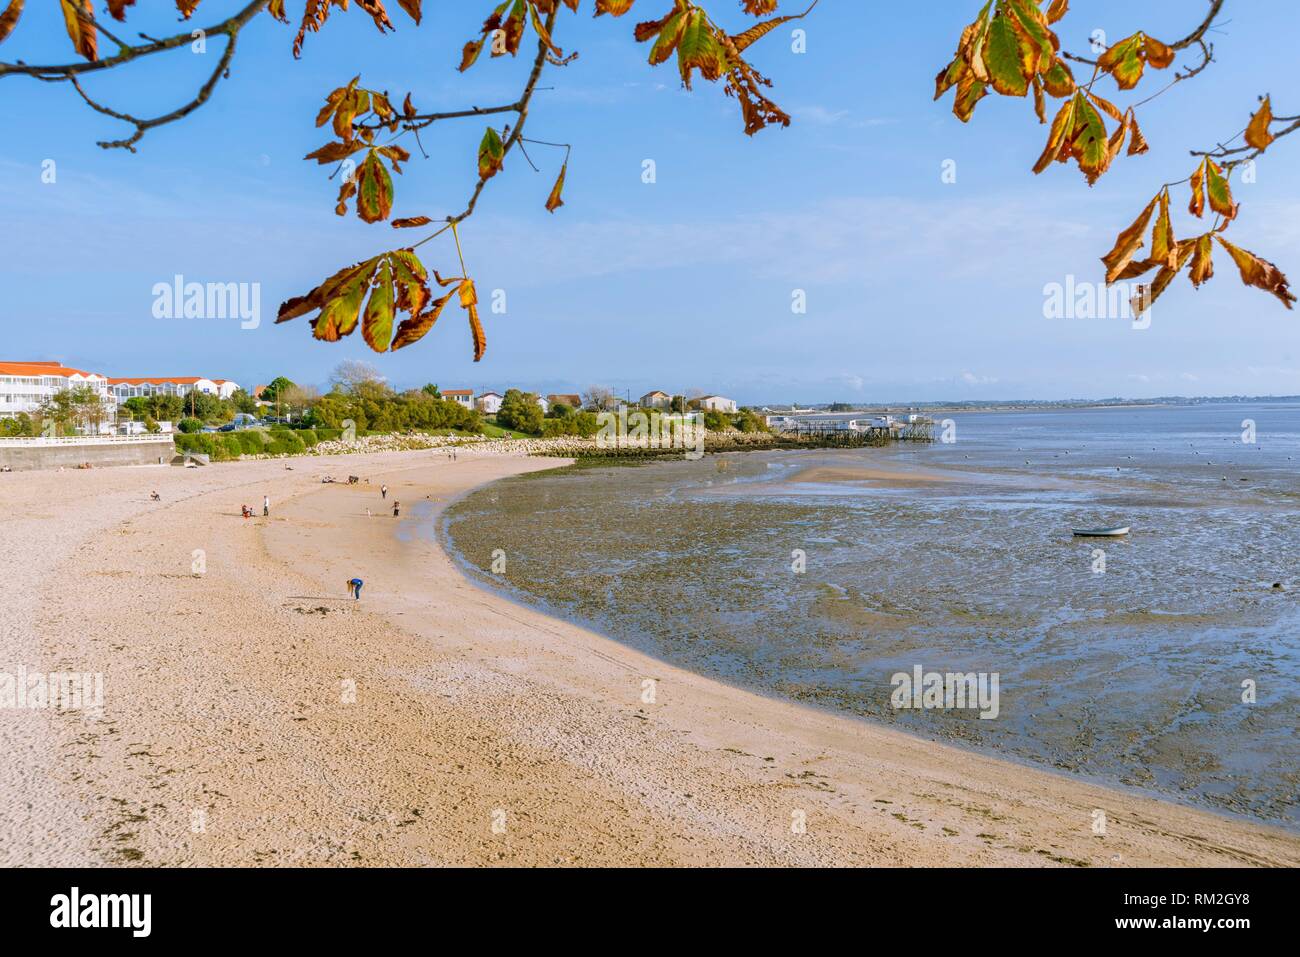 La plage du sud de l'anse de la Coue à marée basse à Fouras,  Charente-Maritime, Nouvelle-Aquitaine Région, France, Europe Photo Stock -  Alamy